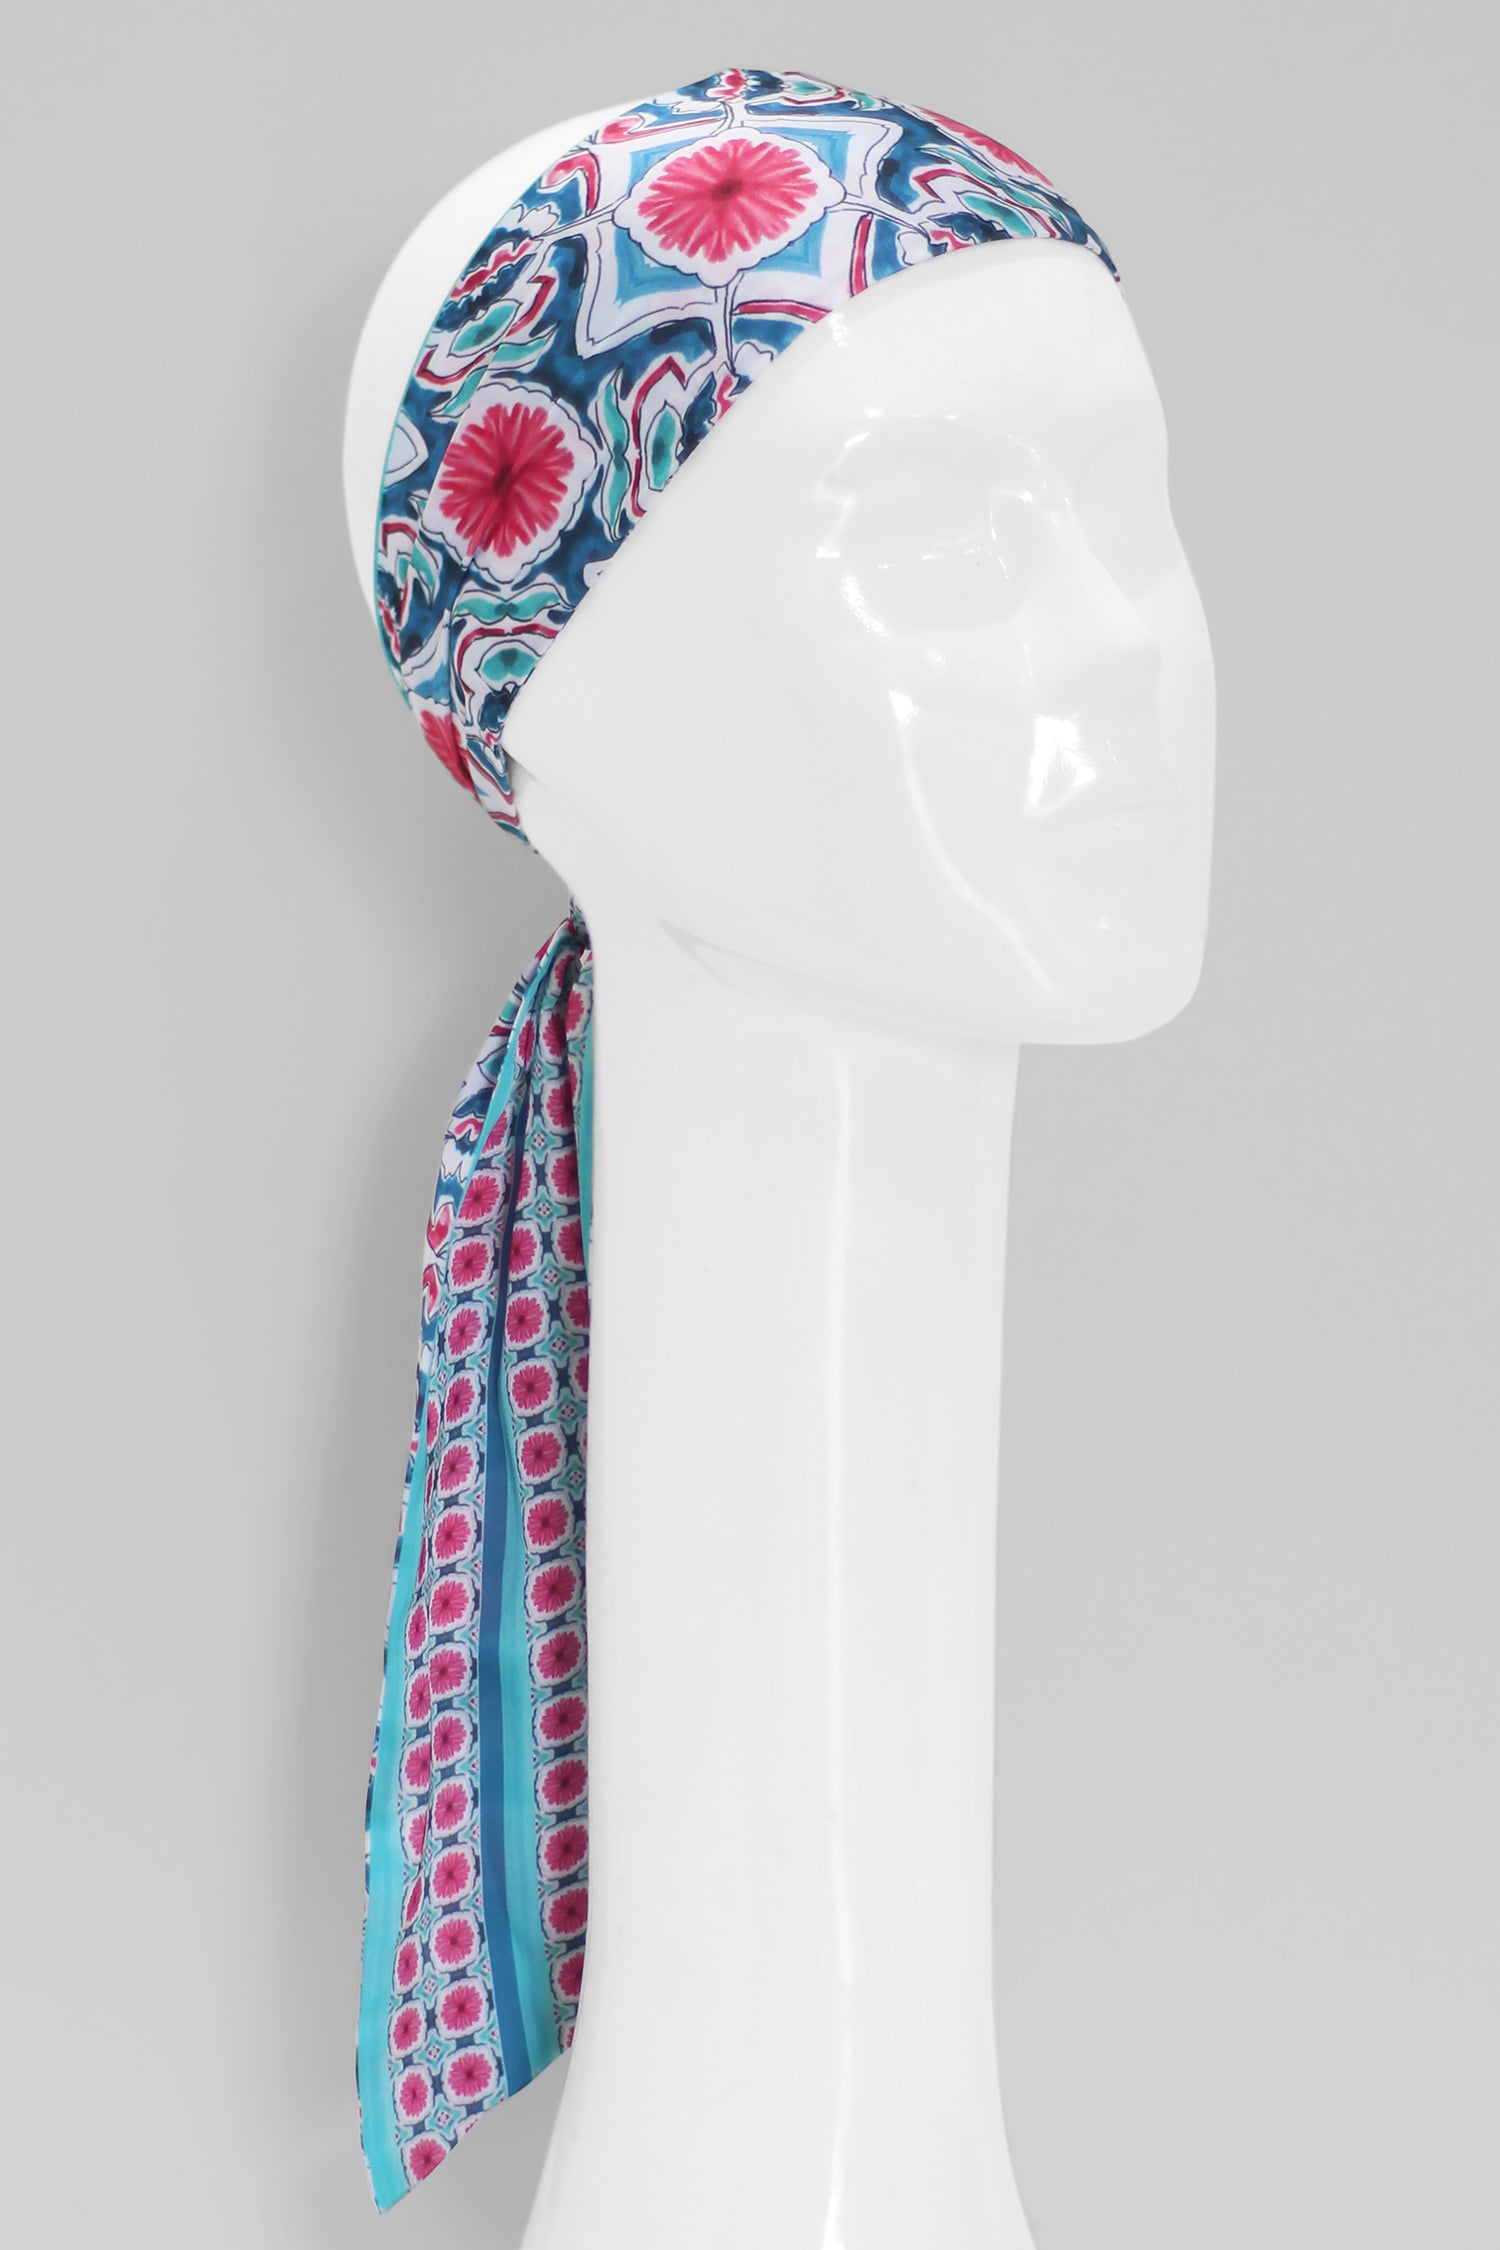 bandana faixa twilly scarf me arabesco azul em cetim de poliéster 8x130cm